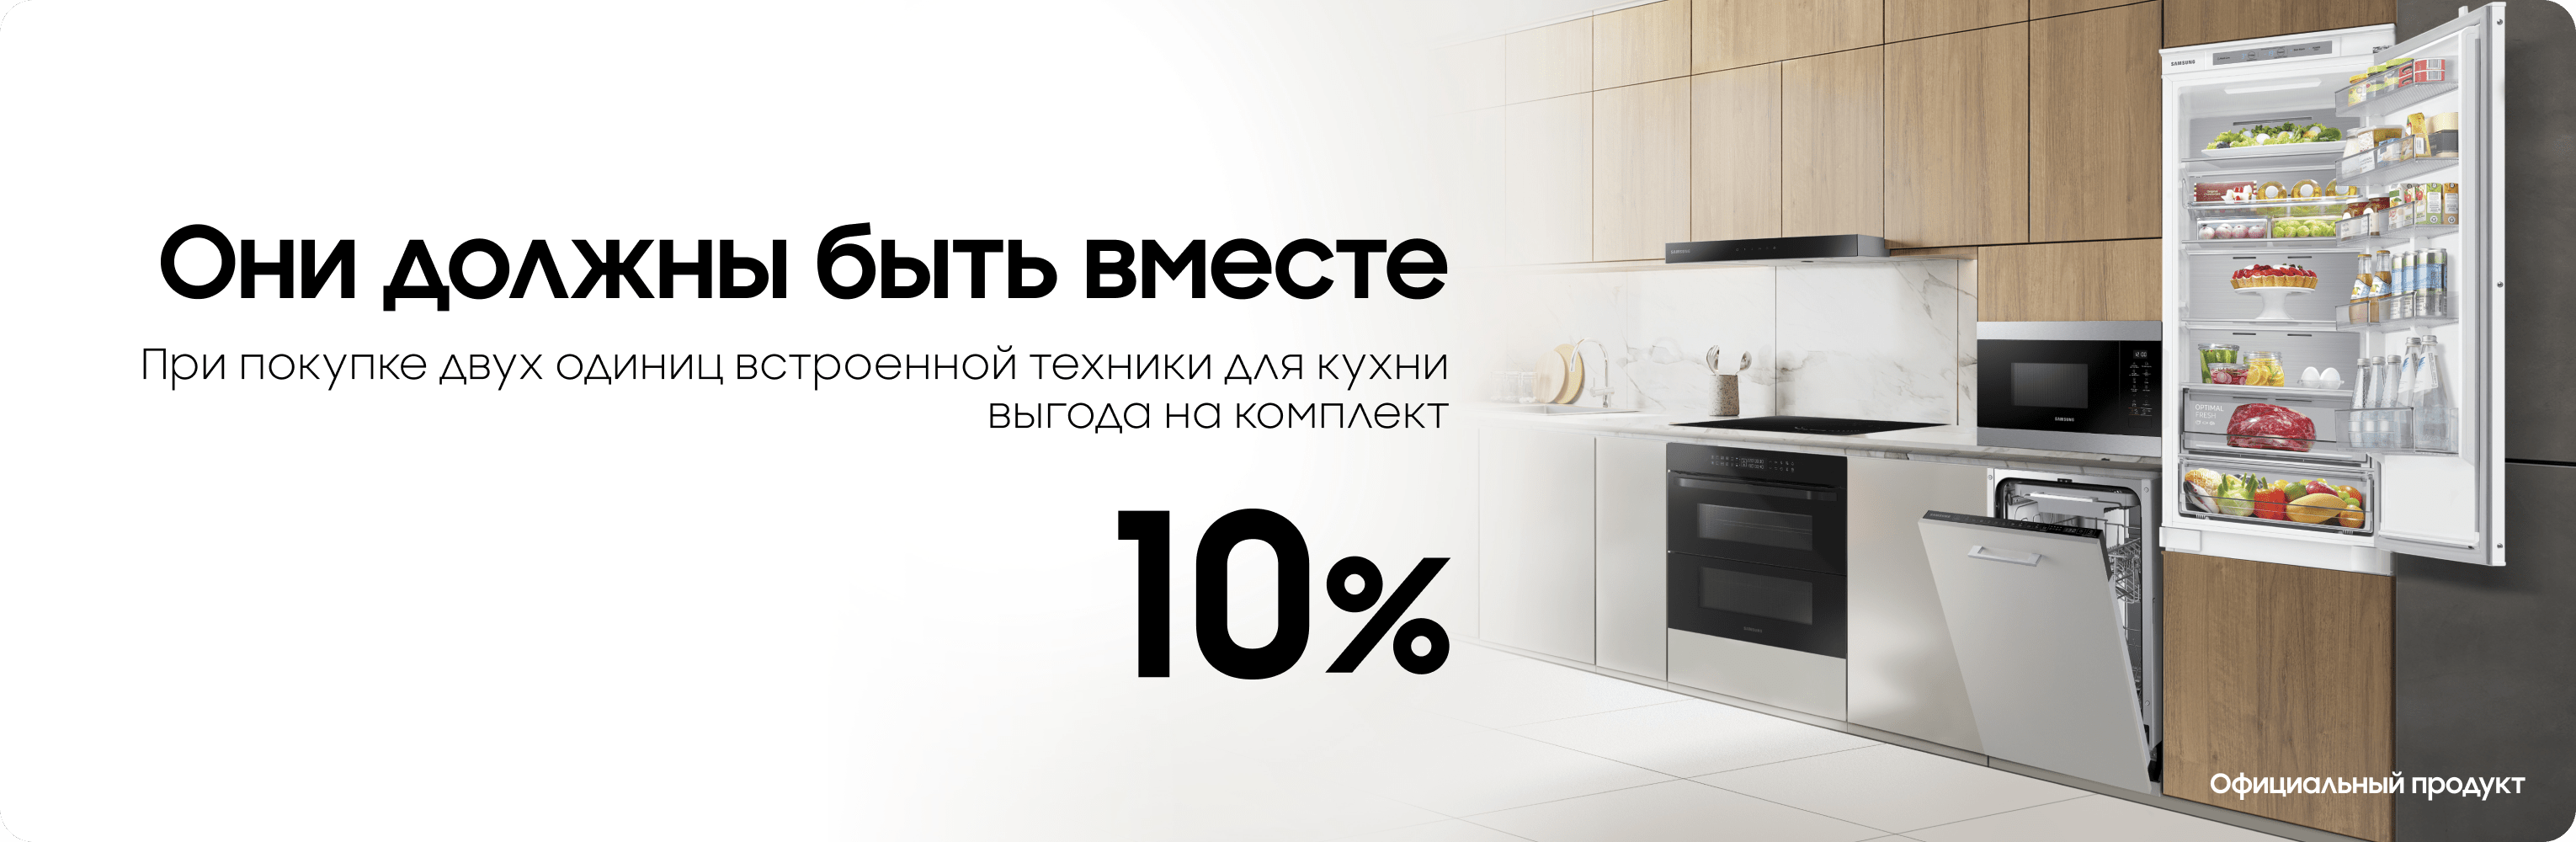 Выгода 10% на комплект духовой печи и вытяжки - samsungshop.com.ua